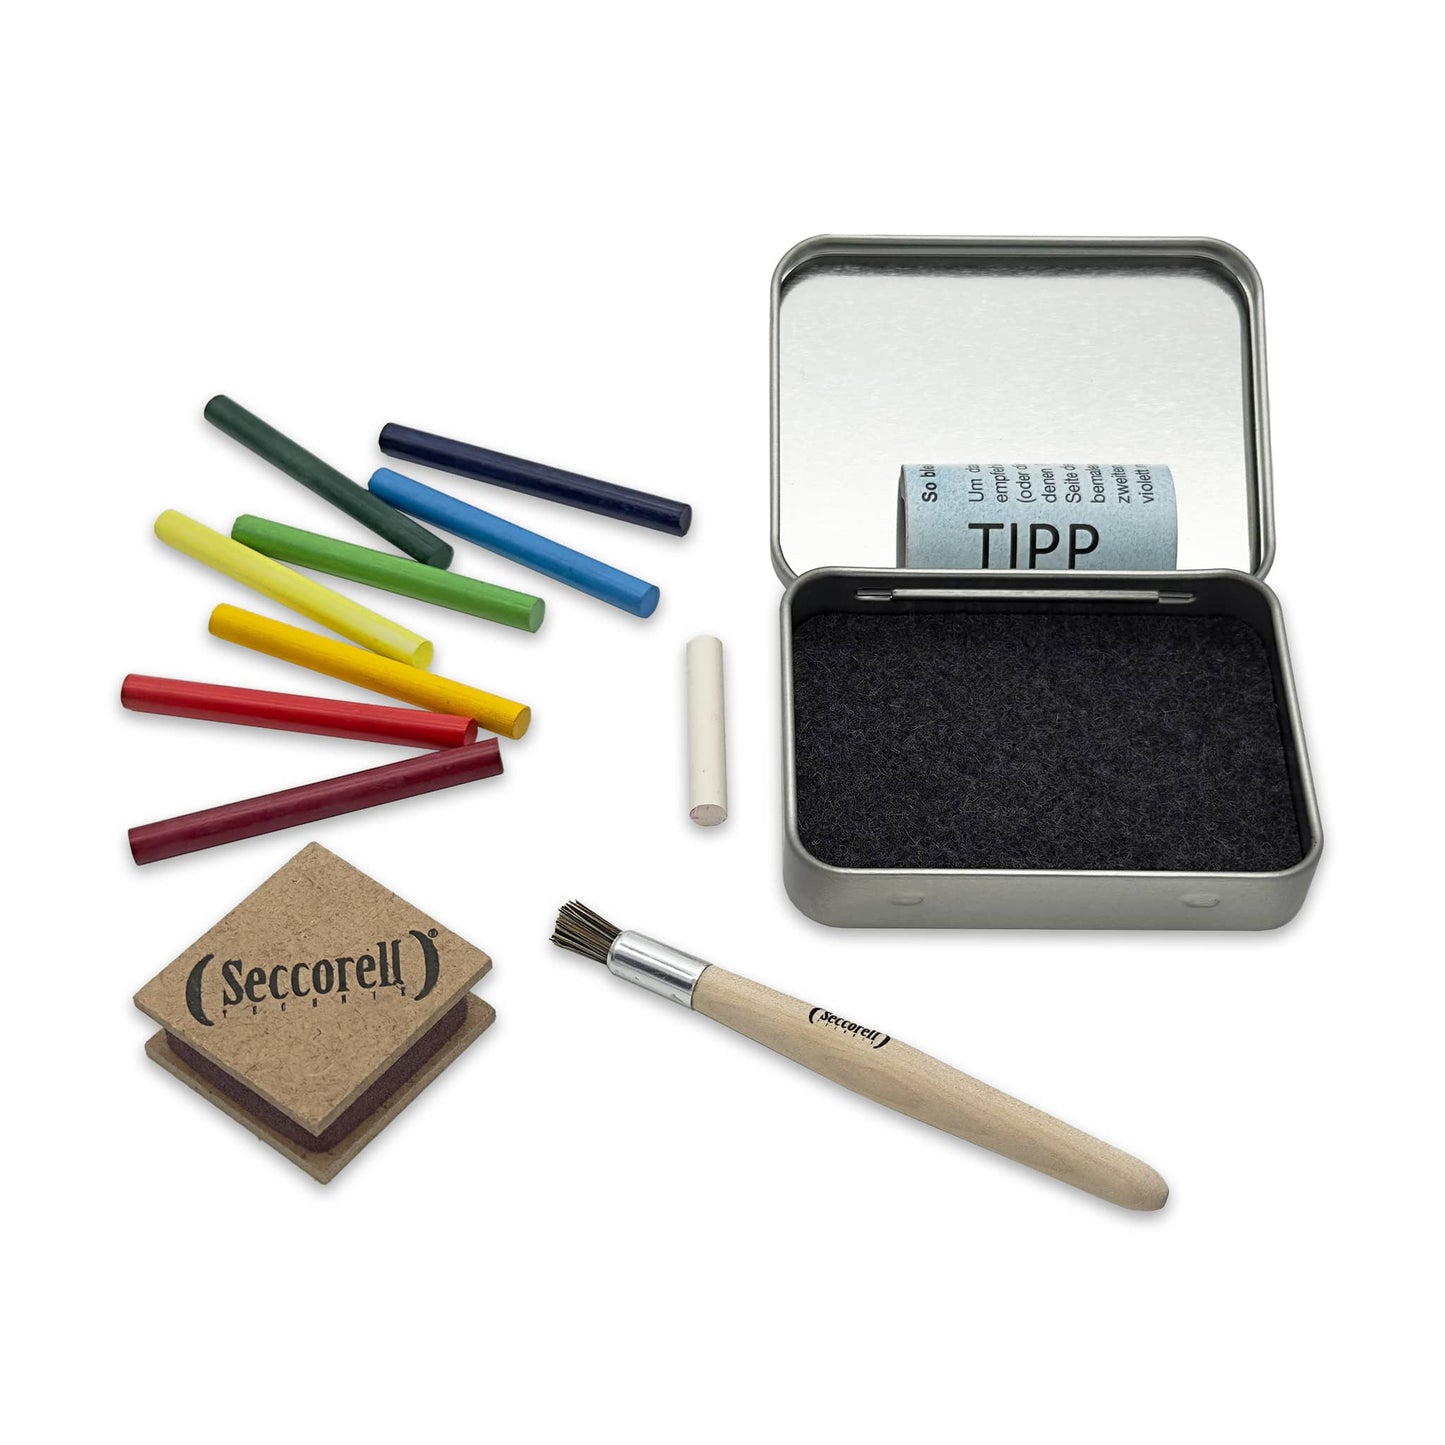 Seccorell Pocket "Kerzen", zeigt alle Utensilien für die Maltechnik, einschließlich 8 Farbstäbchen, Reibeblock, Reinigungsbürste, Radierer in einer praktischen Metallbox mit Filzeinlage.